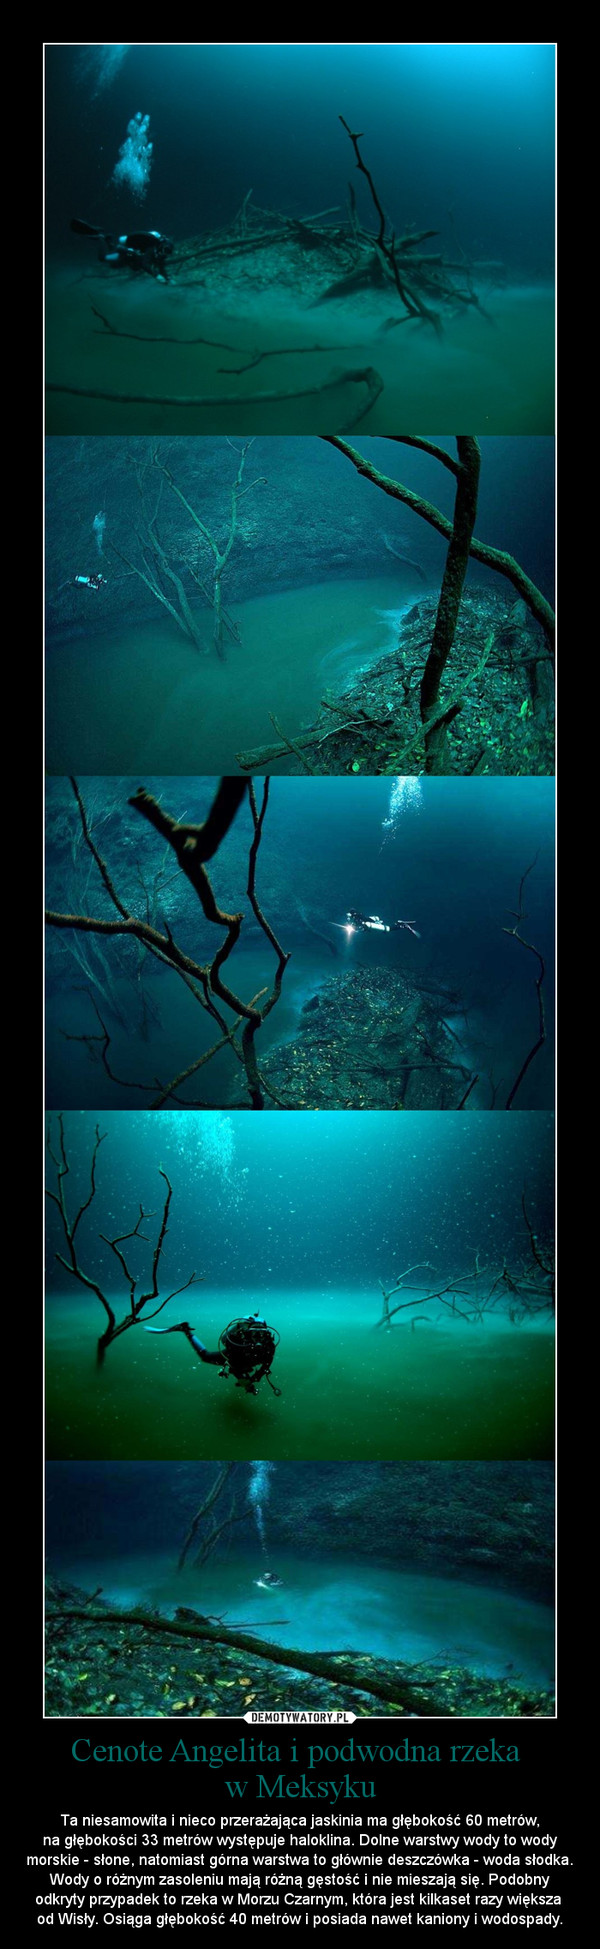 Cenote Angelita i podwodna rzeka 
w Meksyku